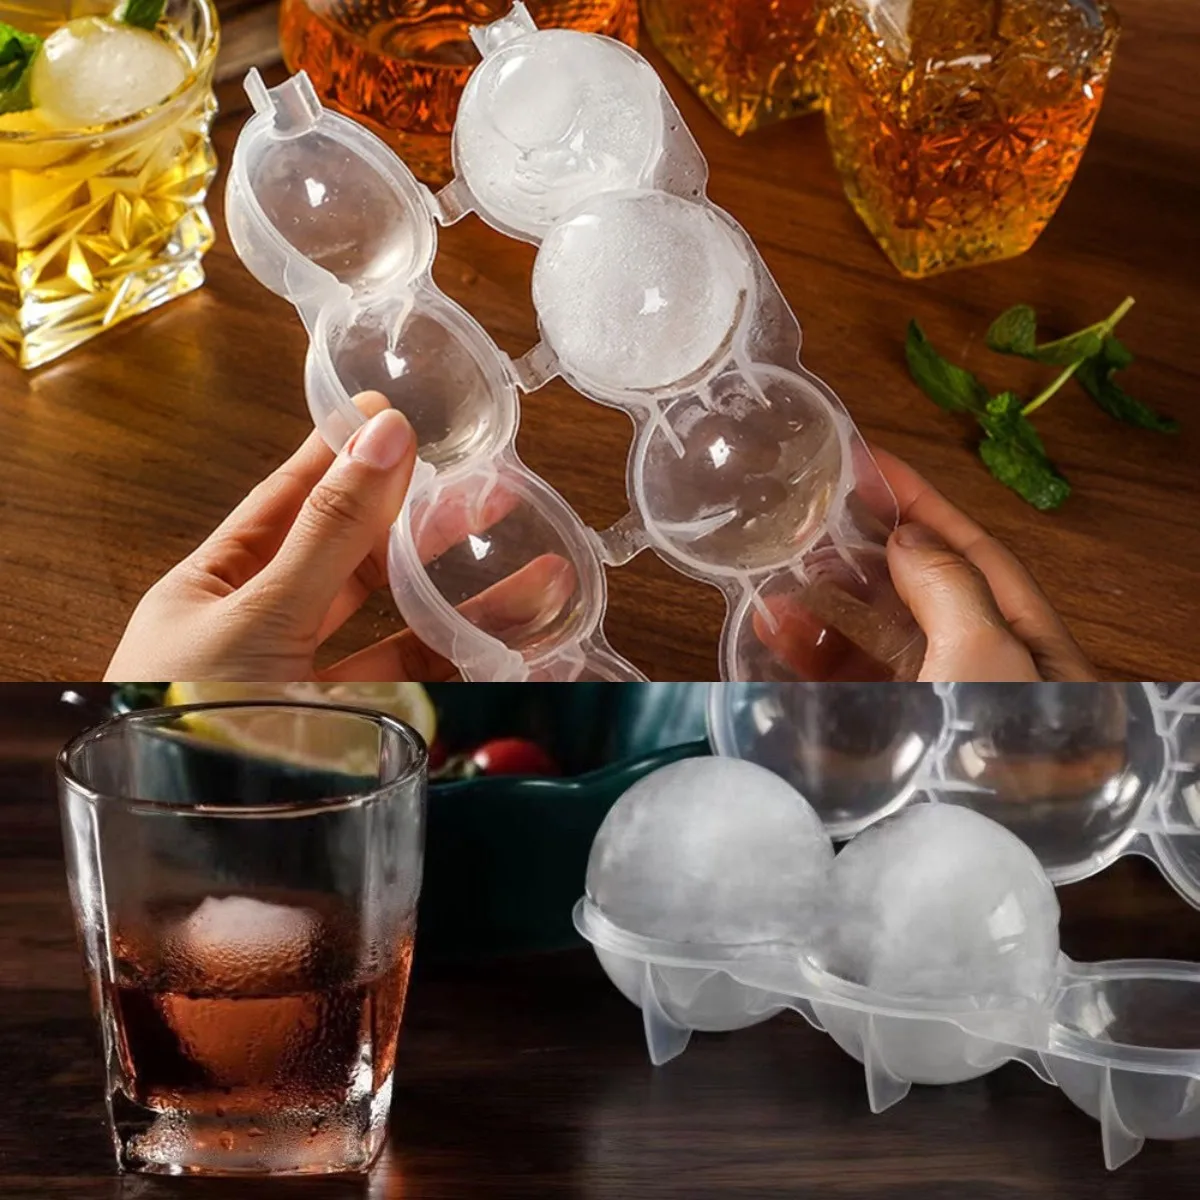 https://ae01.alicdn.com/kf/S73dc15ce191b4915880fe628cb8e7fd8C/Molde-redondo-para-Hacer-bolas-de-hielo-accesorio-para-hacer-helados-whisky-c-ctel-esfera-cubitos.jpg